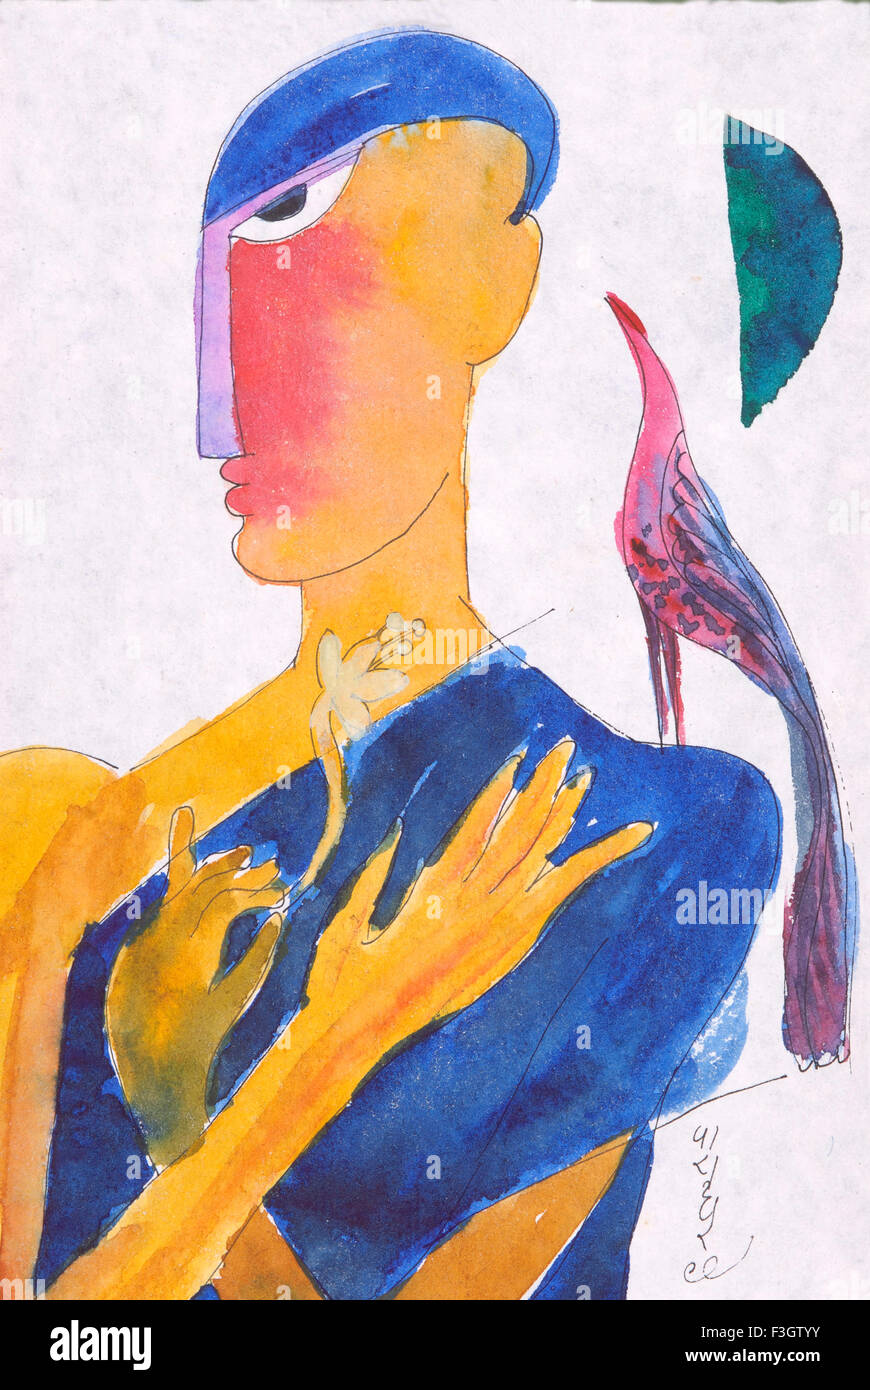 L'homme oiseau et offrant avec lune aquarelle sur papier fait main Banque D'Images